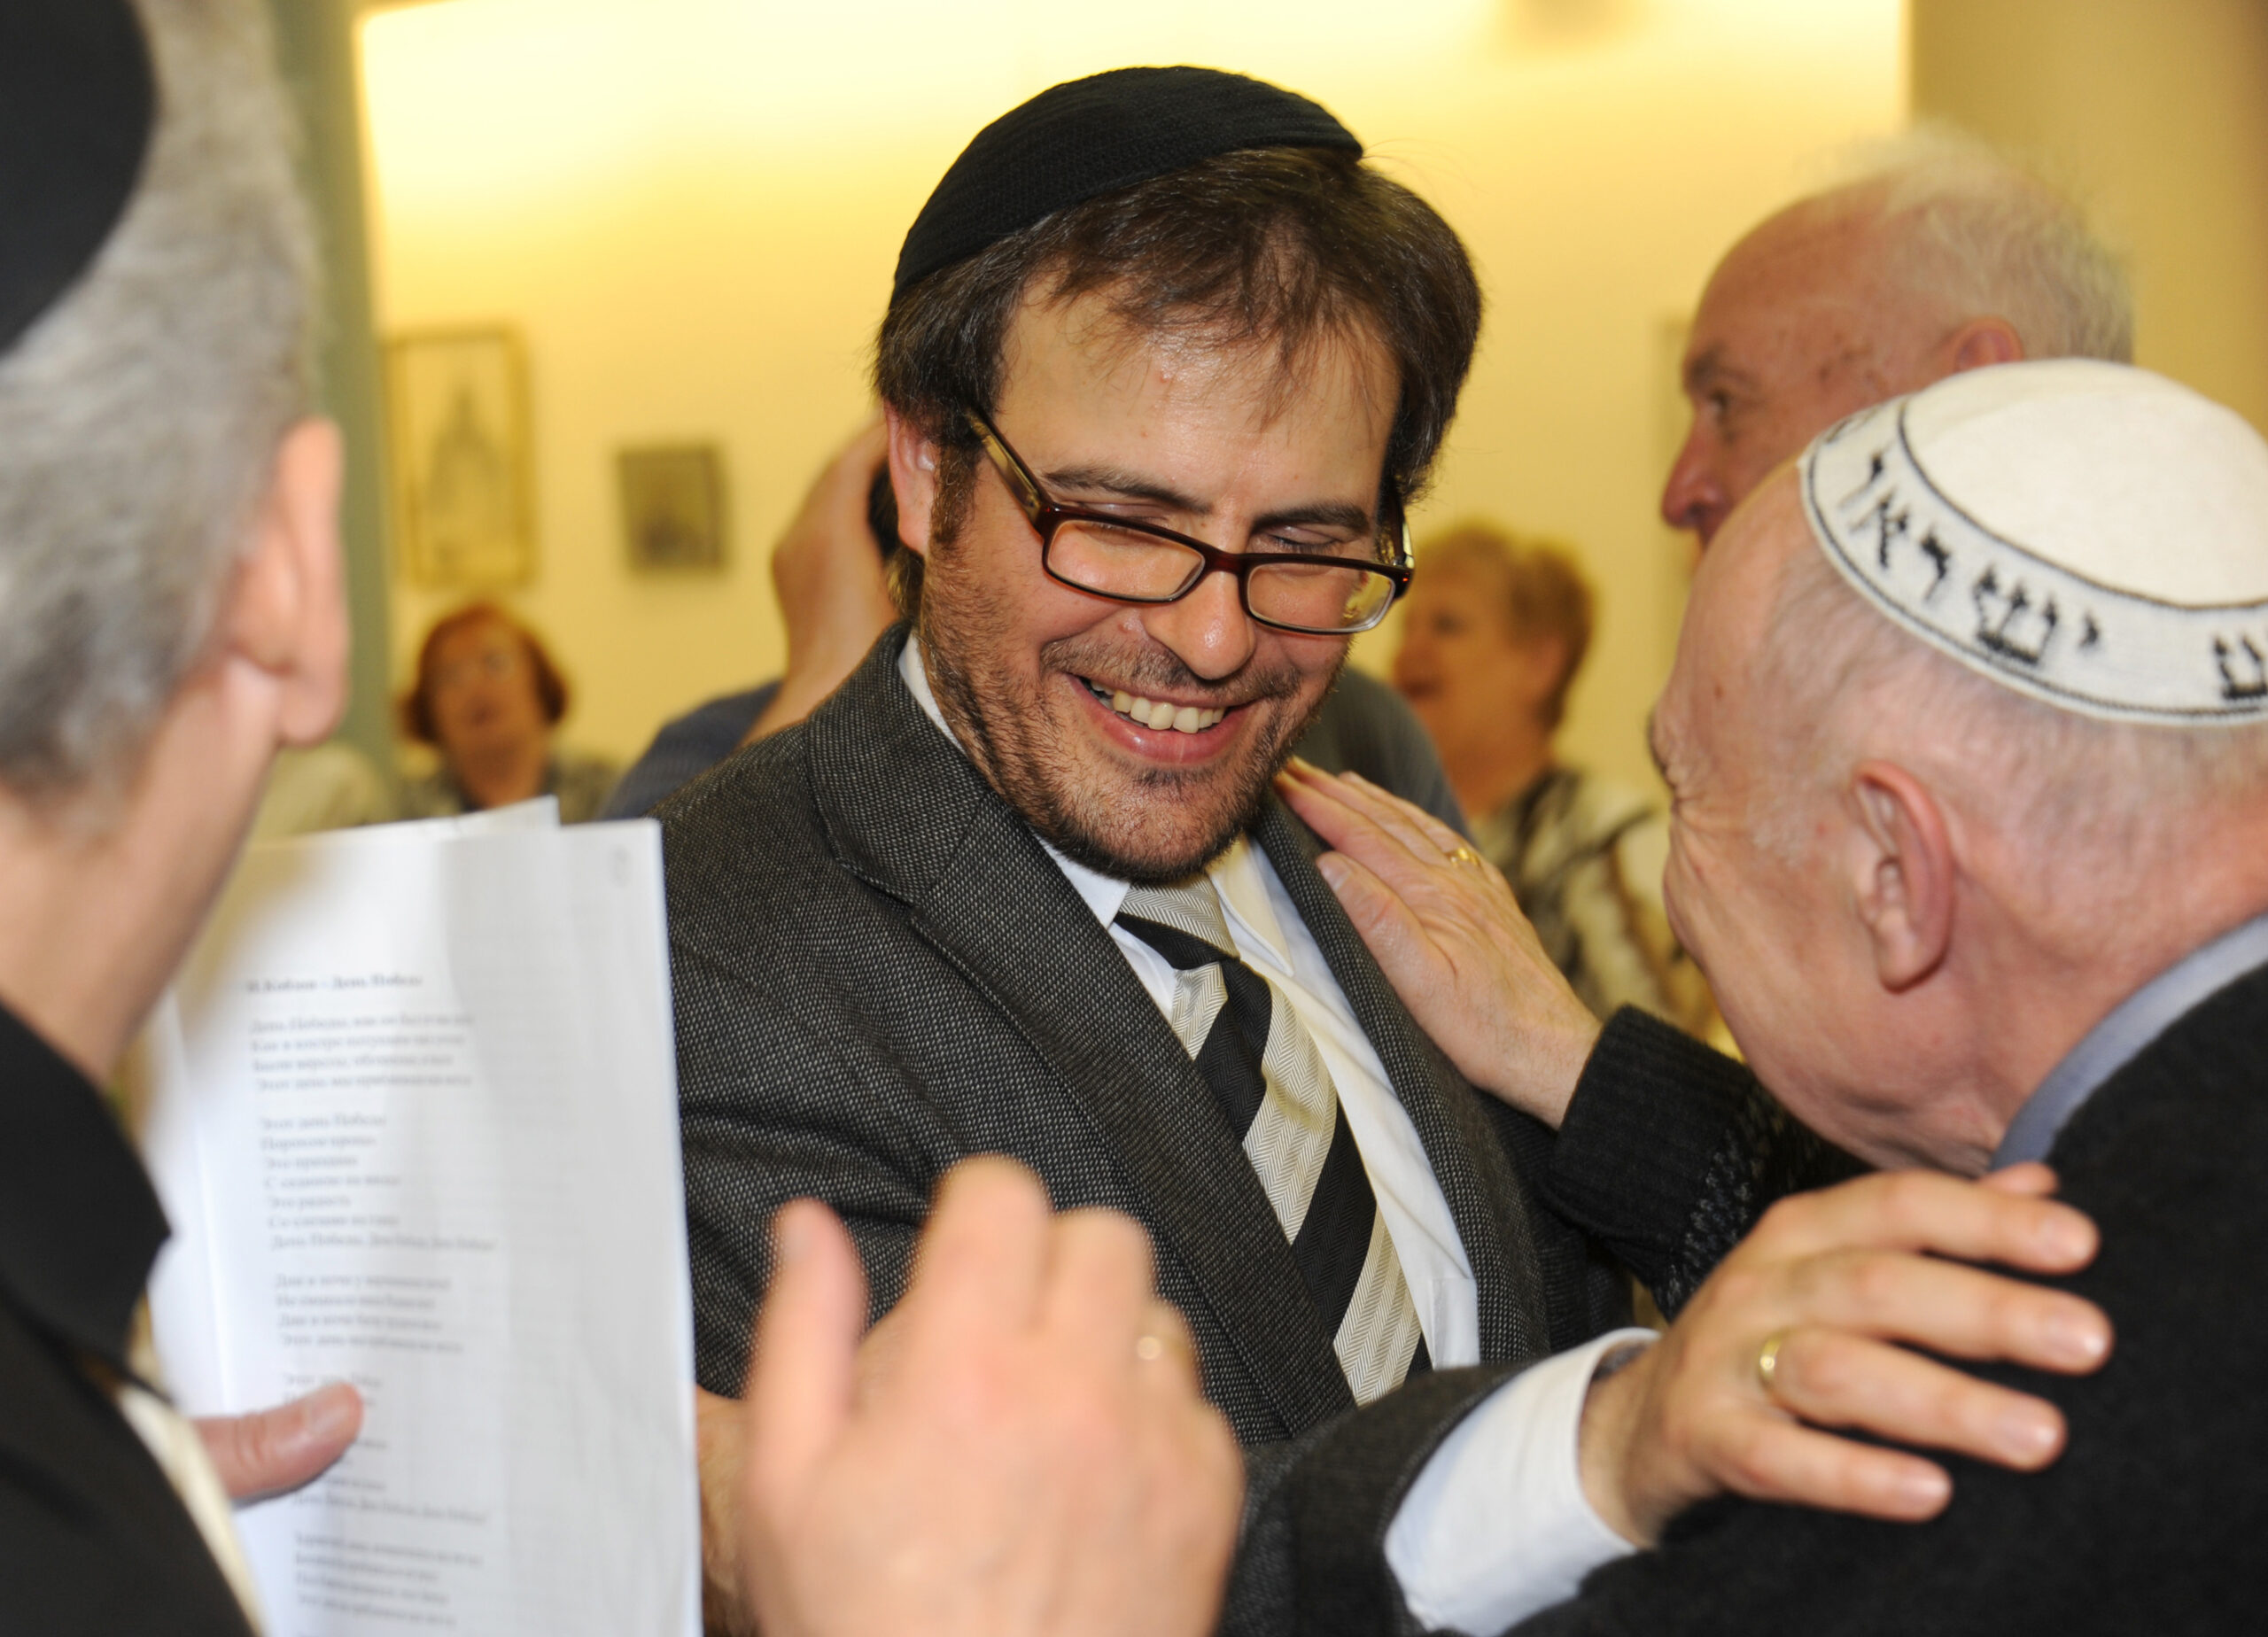 Le rabbin Avraham Zeev Nussbaum avec des membres de la communauté. Photographe : Igor Eisenschtat. Collection de la communauté juive